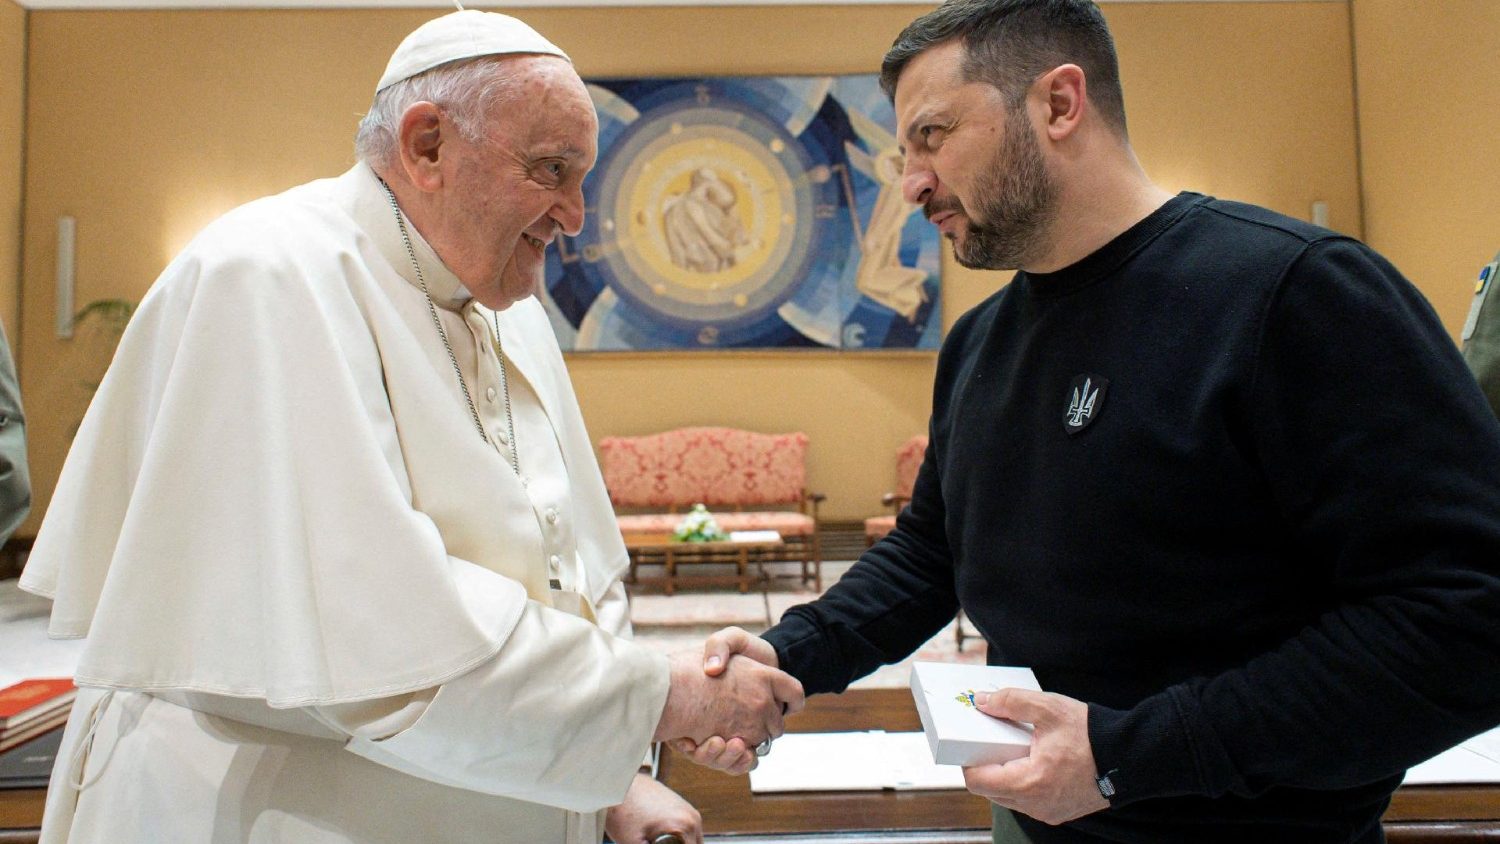 Pemerintah Ukraina berterima kasih kepada Paus atas upayanya untuk perdamaian